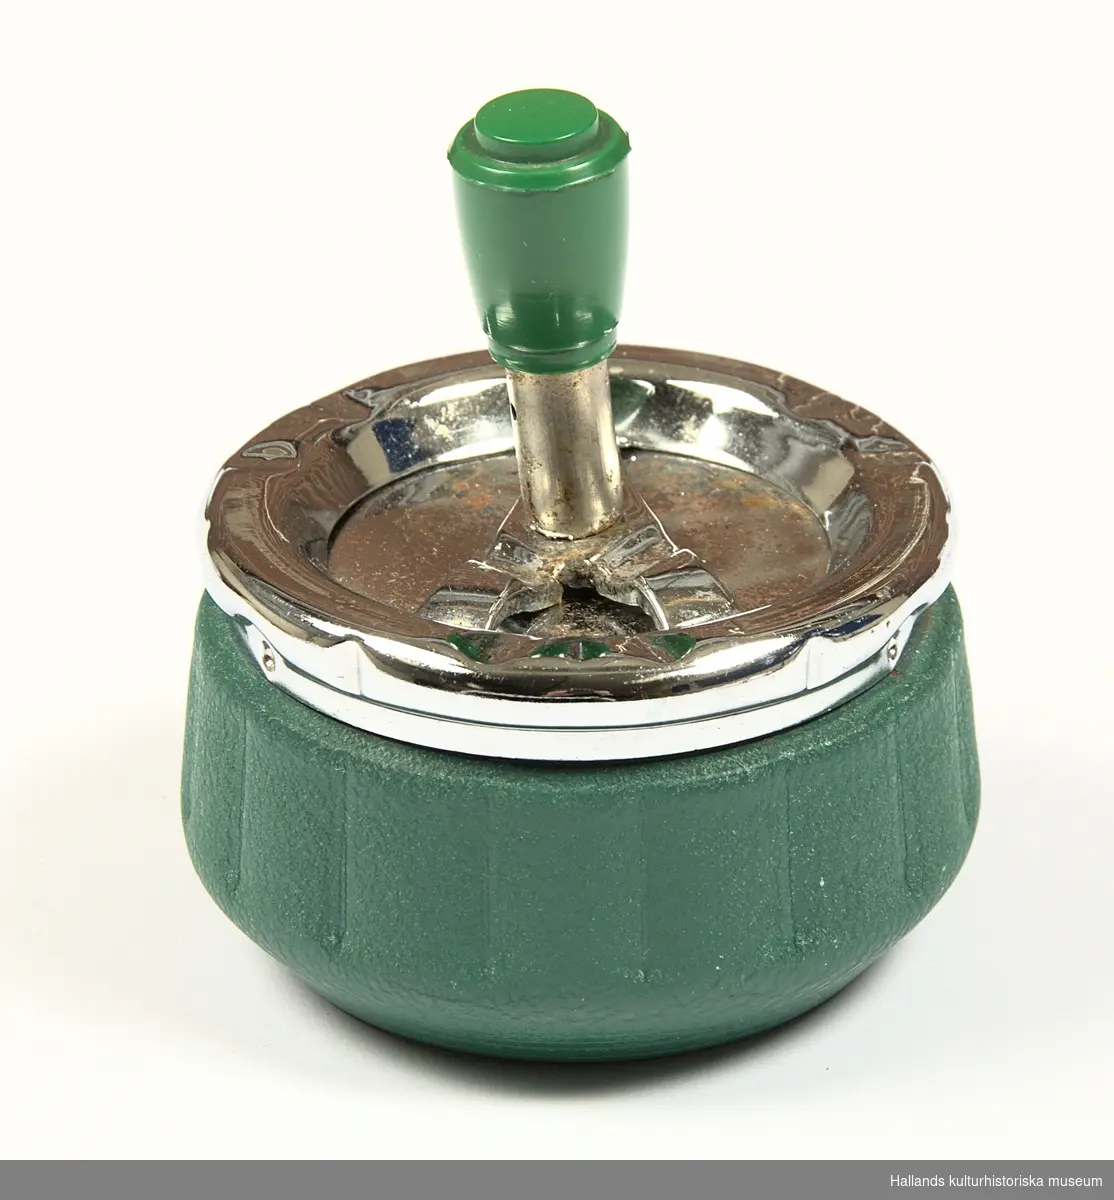 Cylindriskt formad grönmålad plåtburk med lock i förkromad plåt. Locket har en roterande mekanism som aktiveras genom ett tryck på en knapp klädd i grön hårdplast.